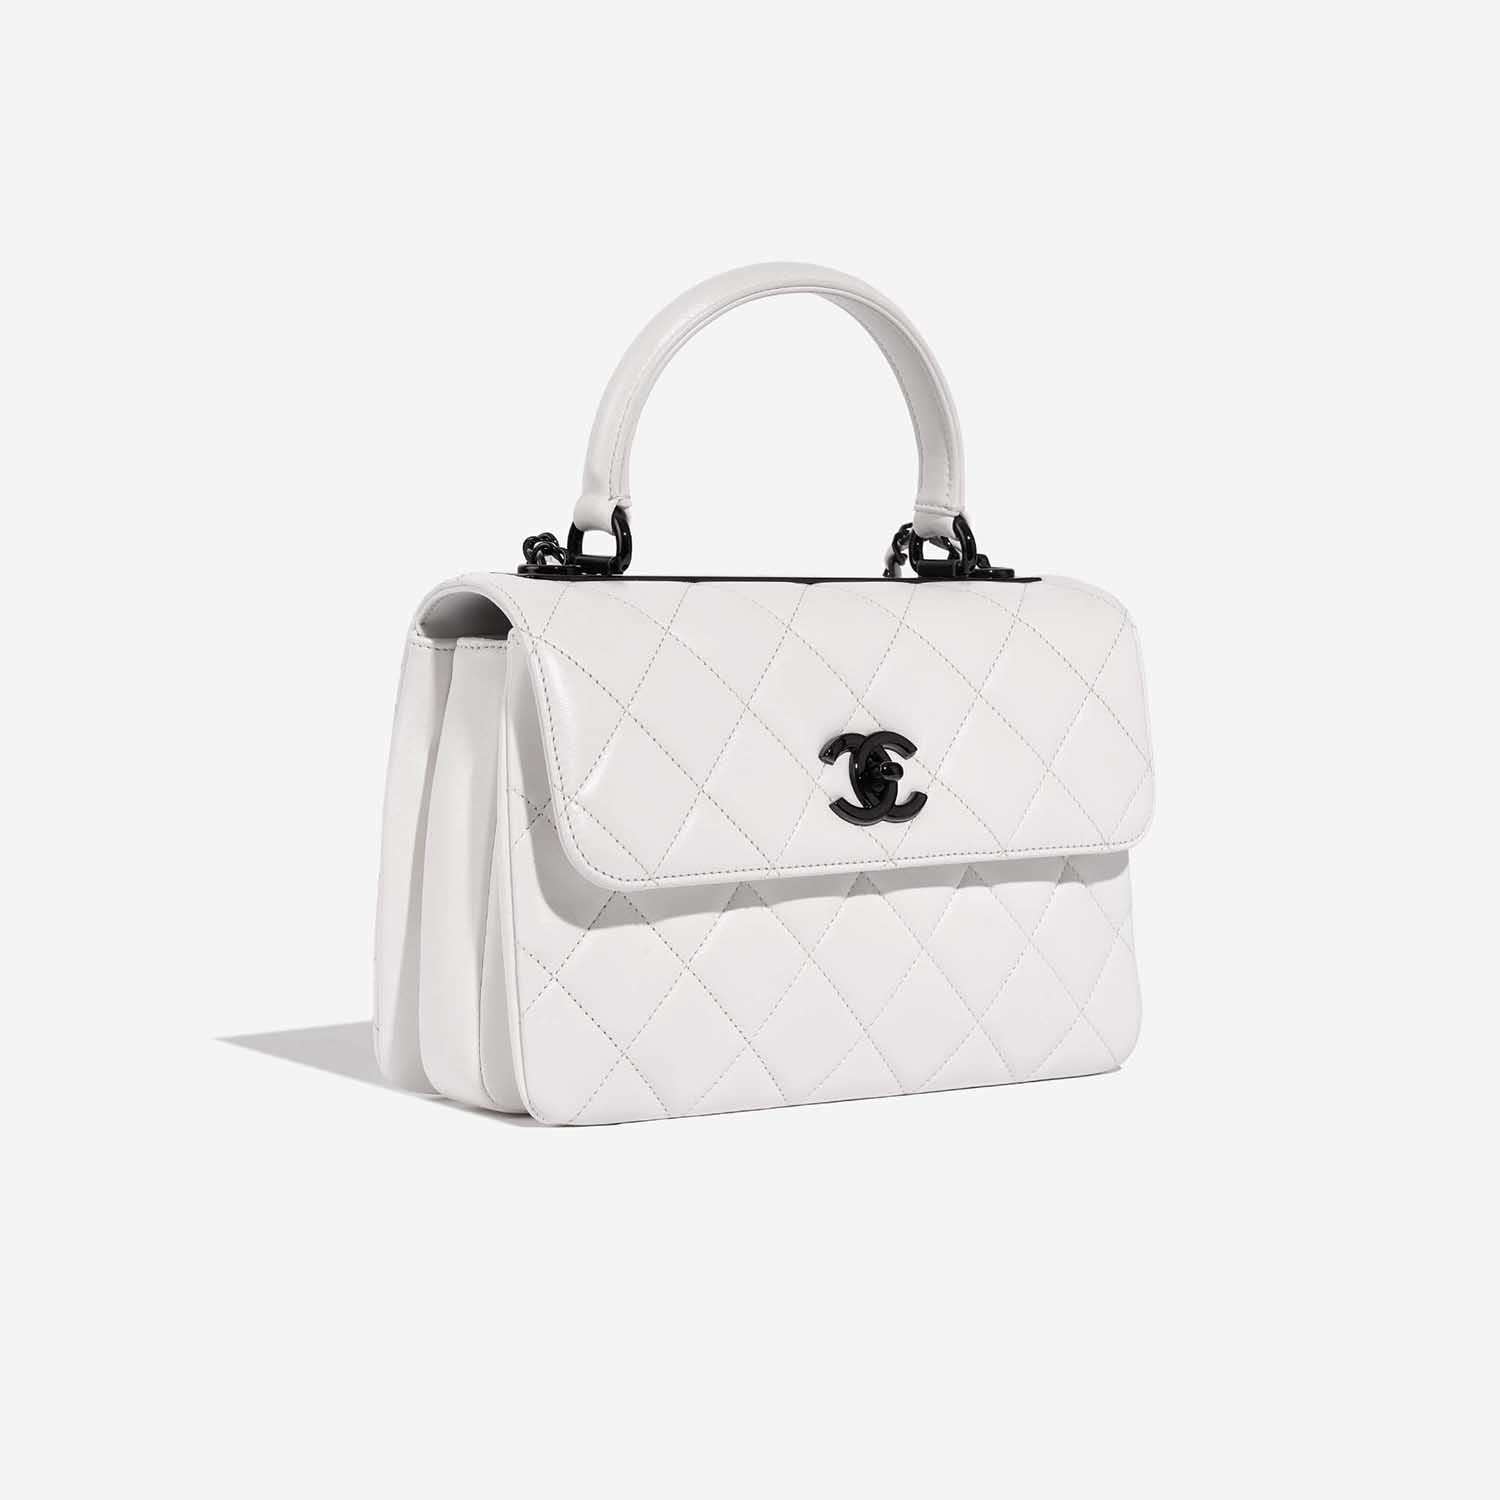 Chanel TimelessHandle Small White Side Front | Verkaufen Sie Ihre Designer-Tasche auf Saclab.com